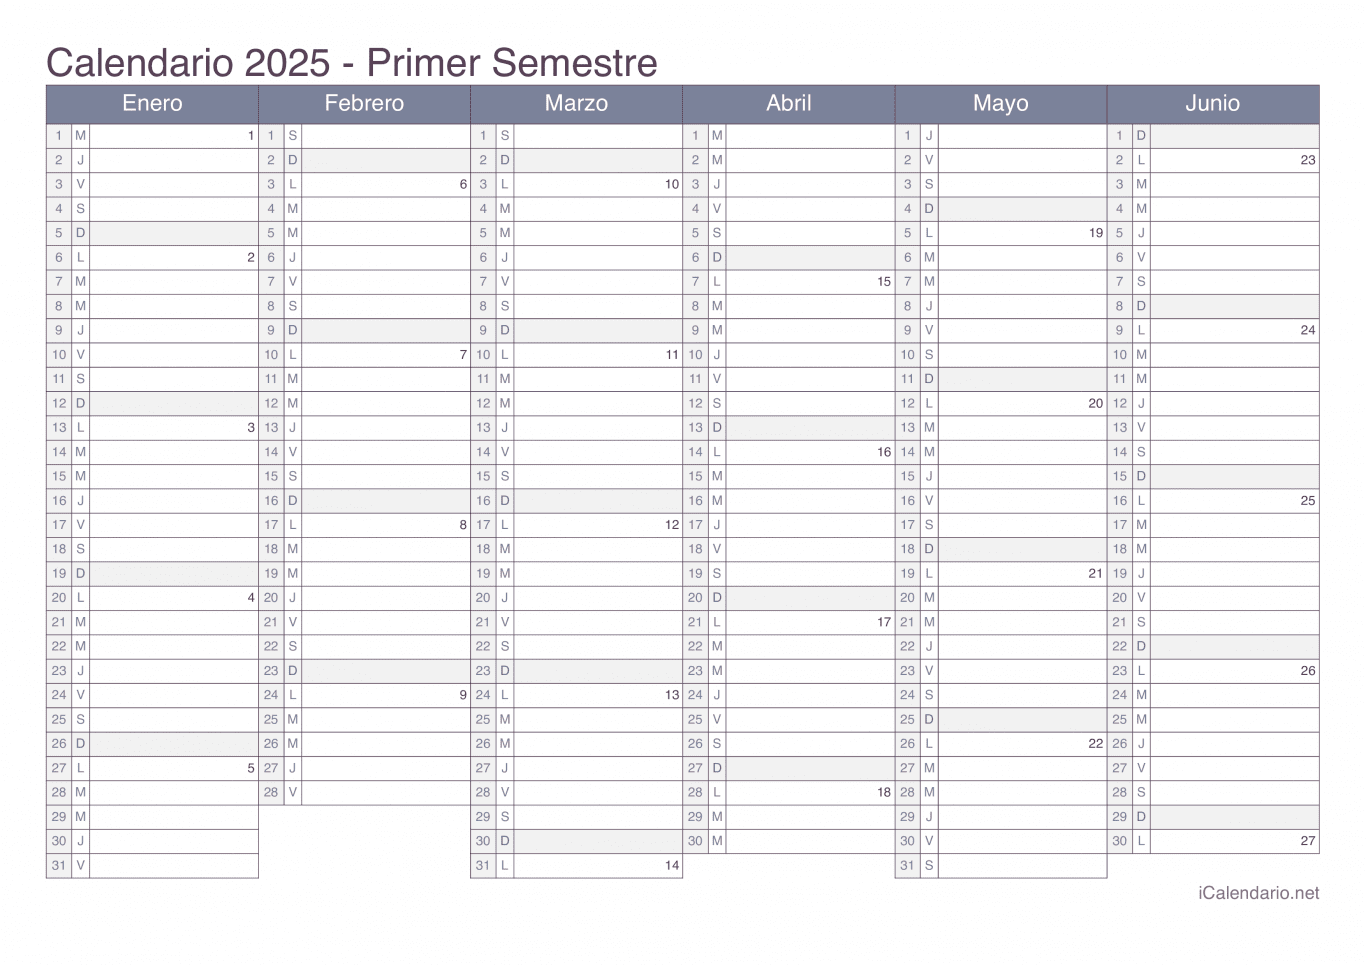 Calendario por semestre com números da semana 2025 - Office